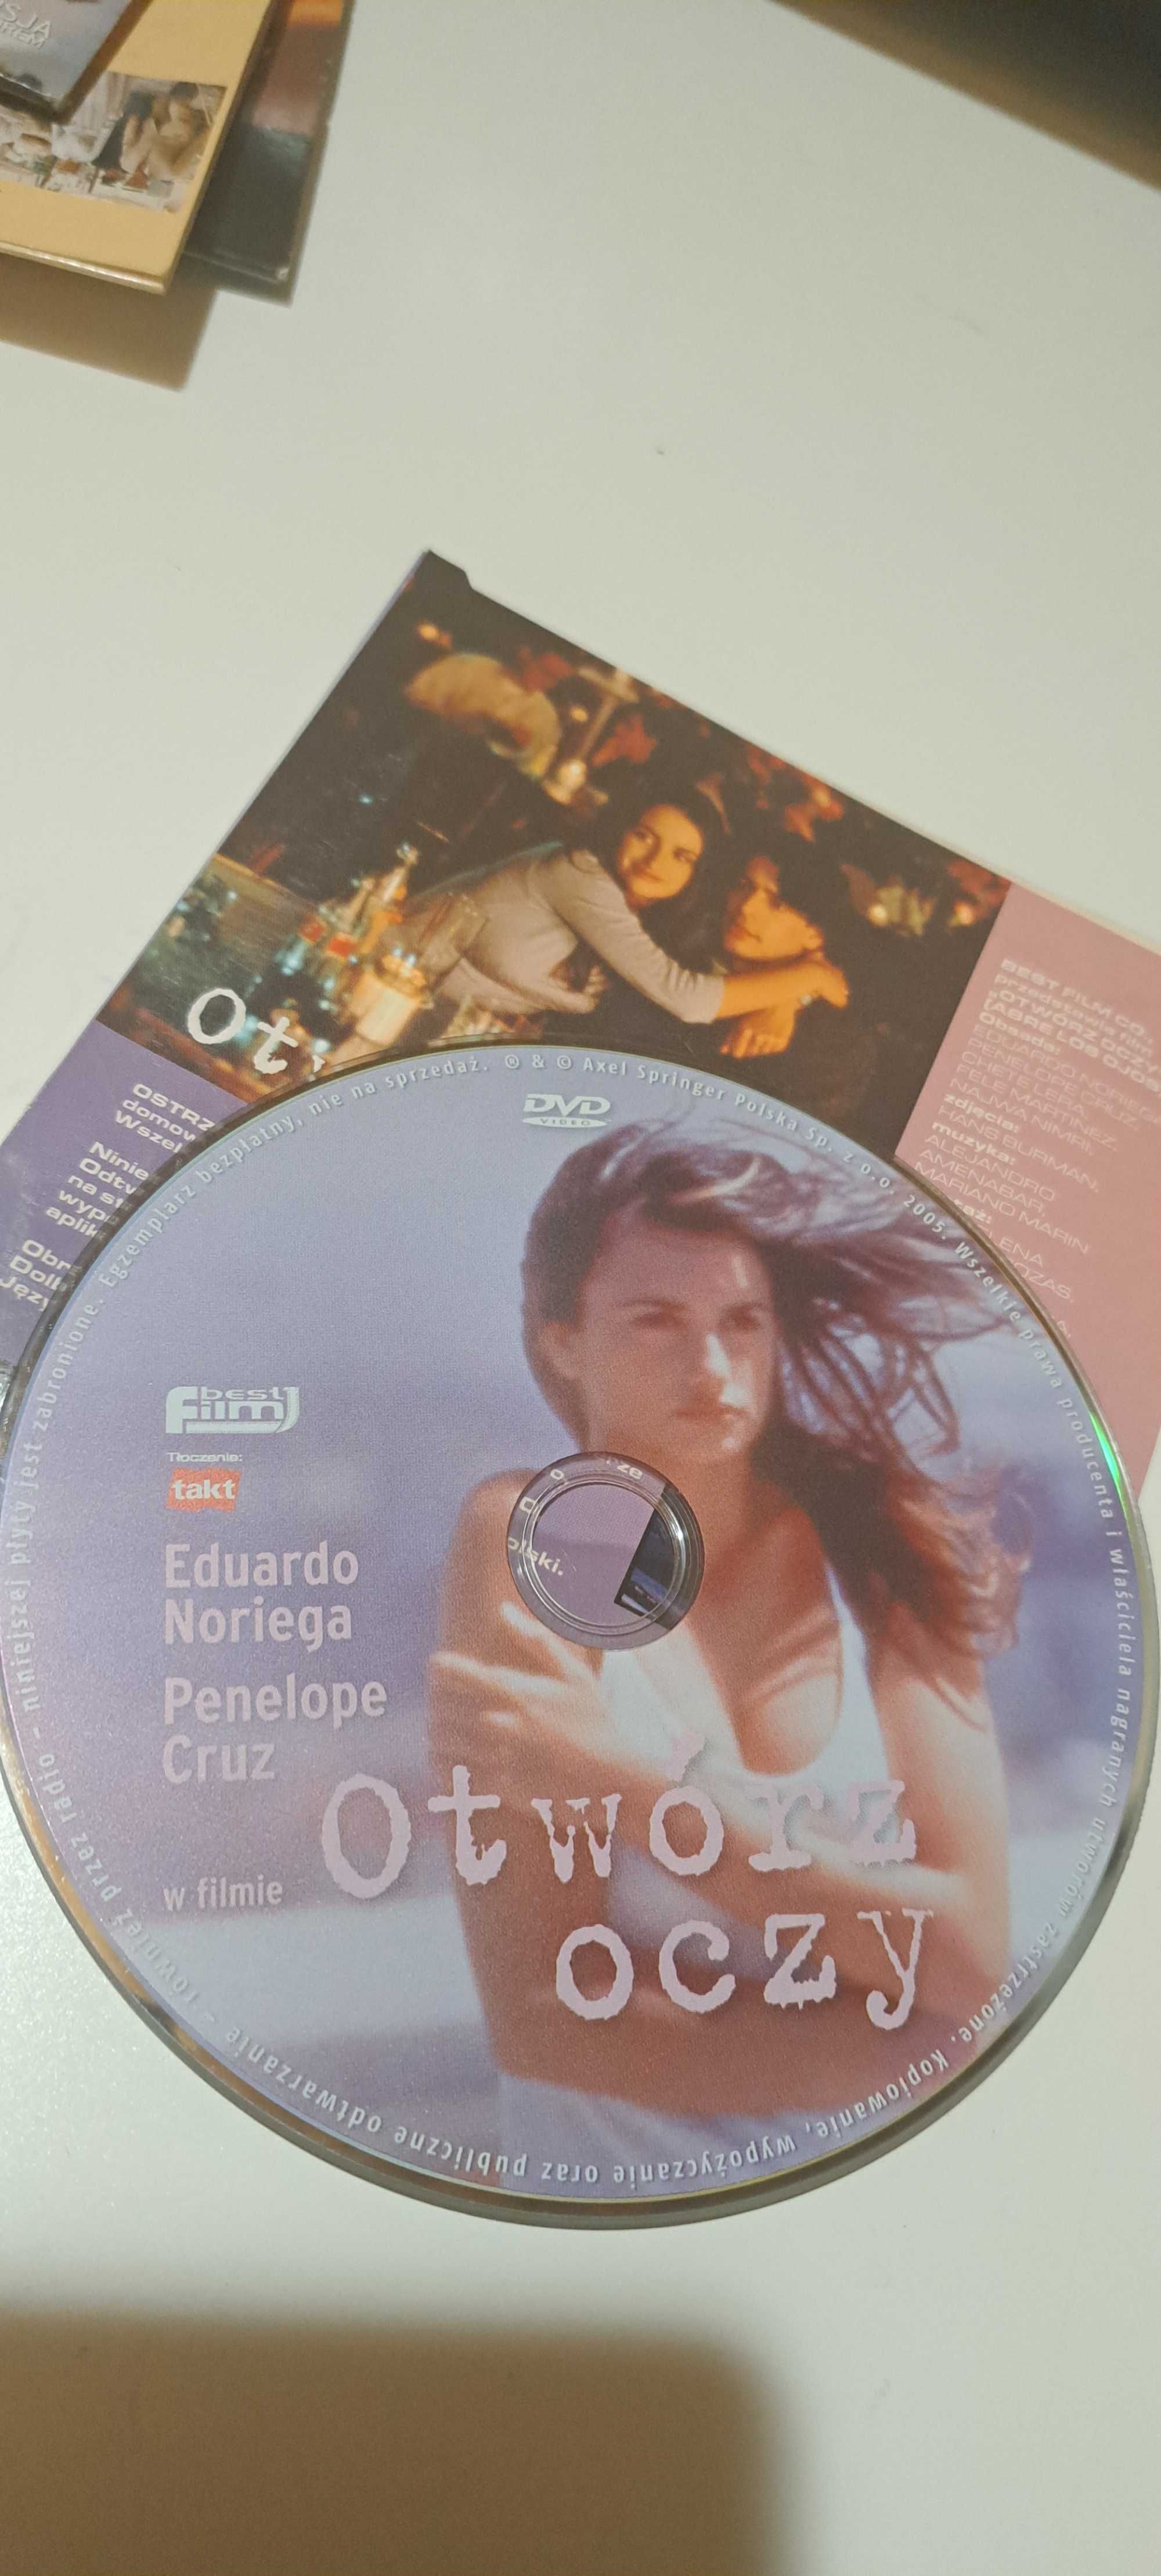 Otwórz OCzy z Penelope Cruz film na DVD